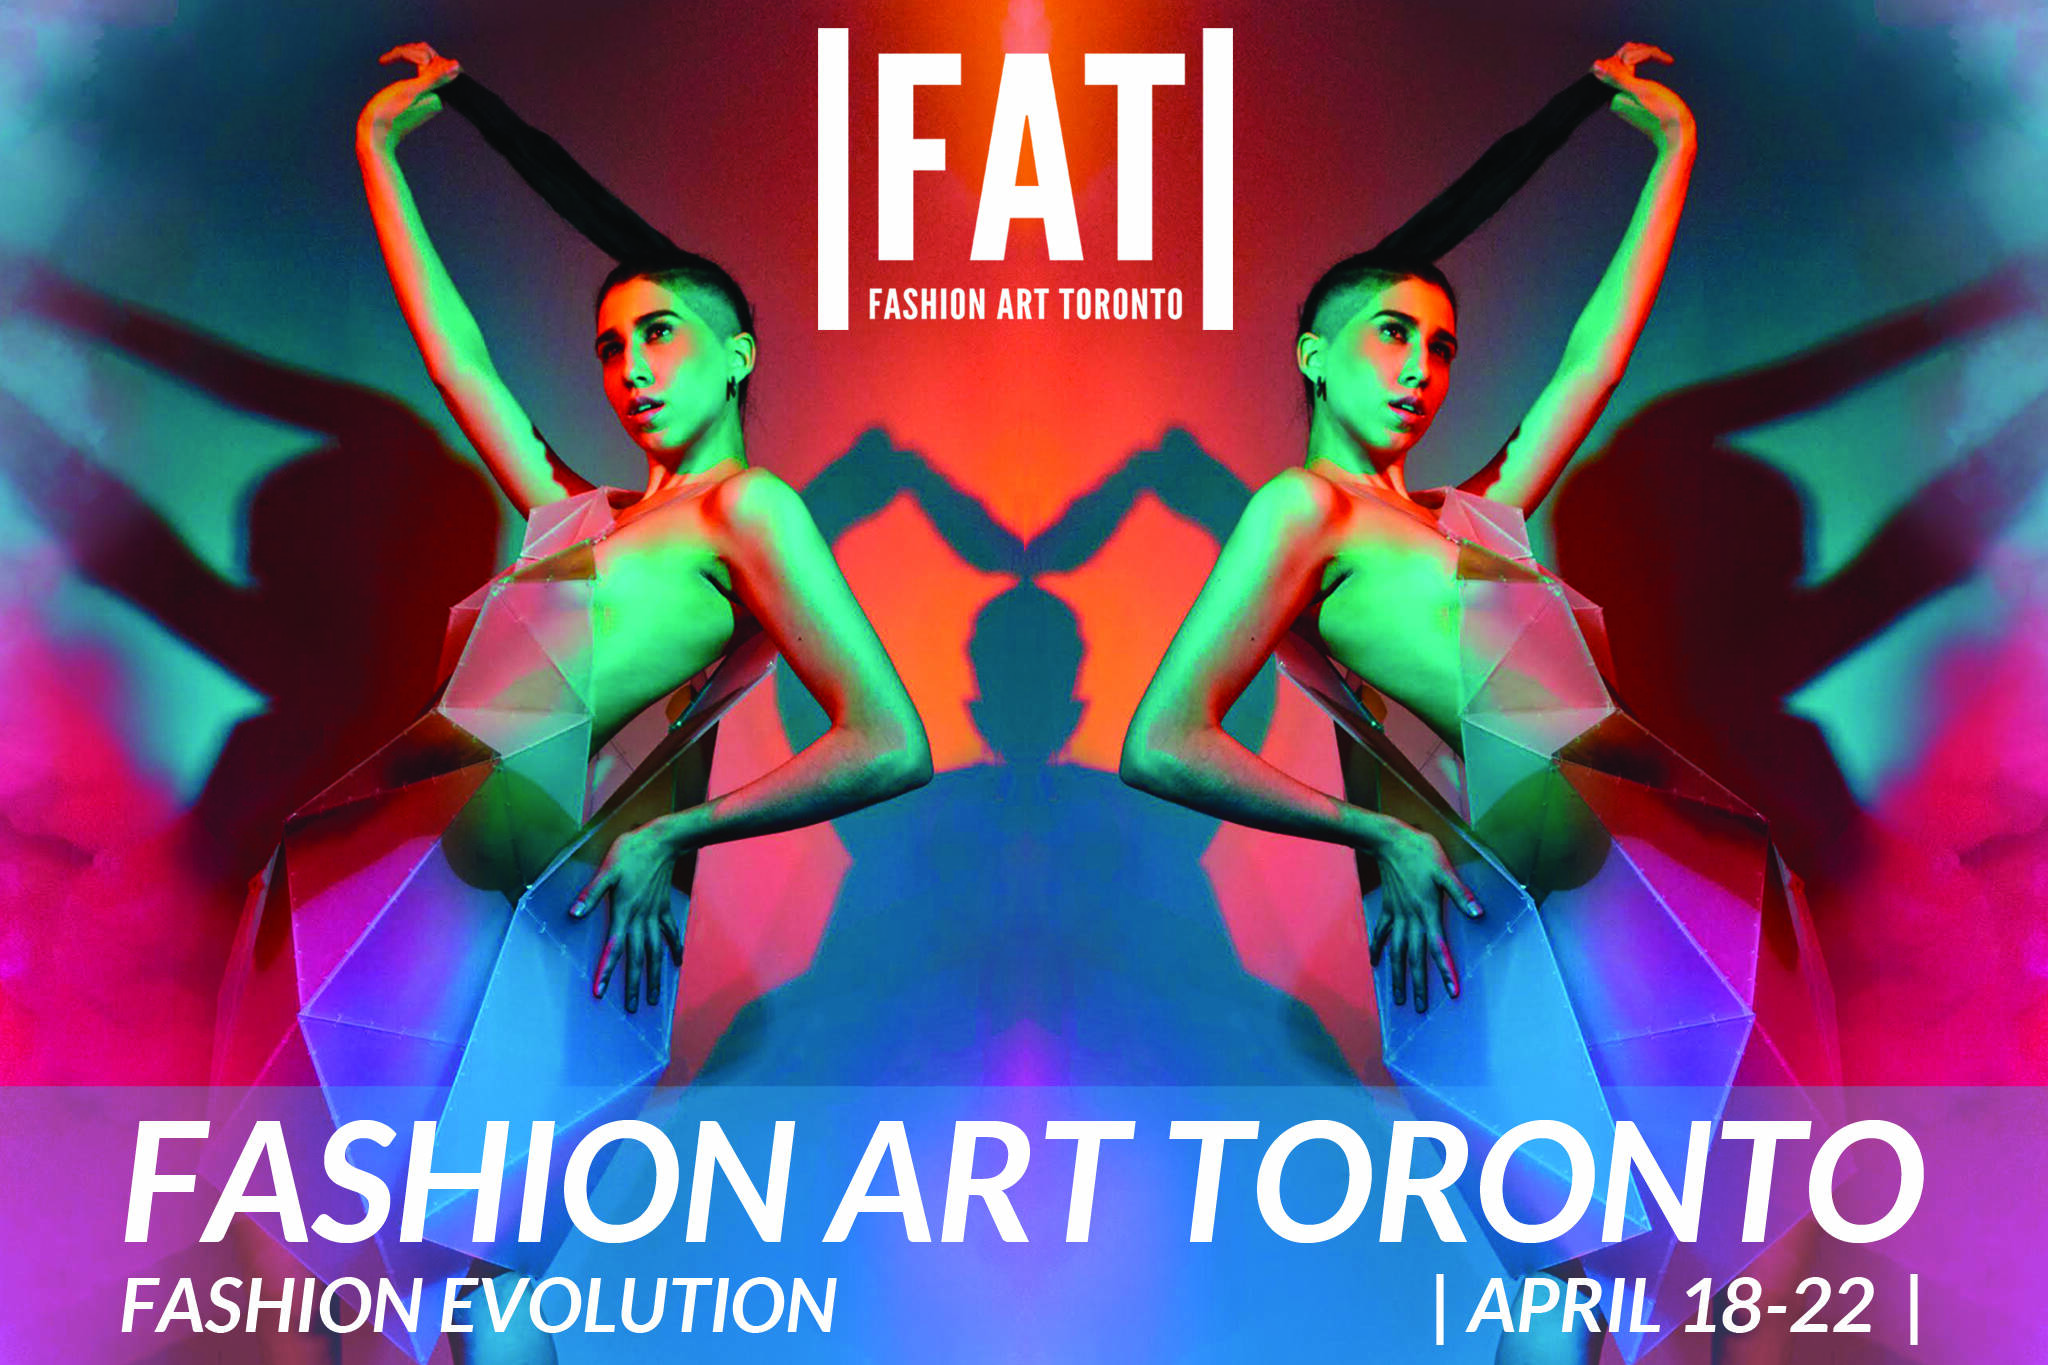 Fashion Art Toronto